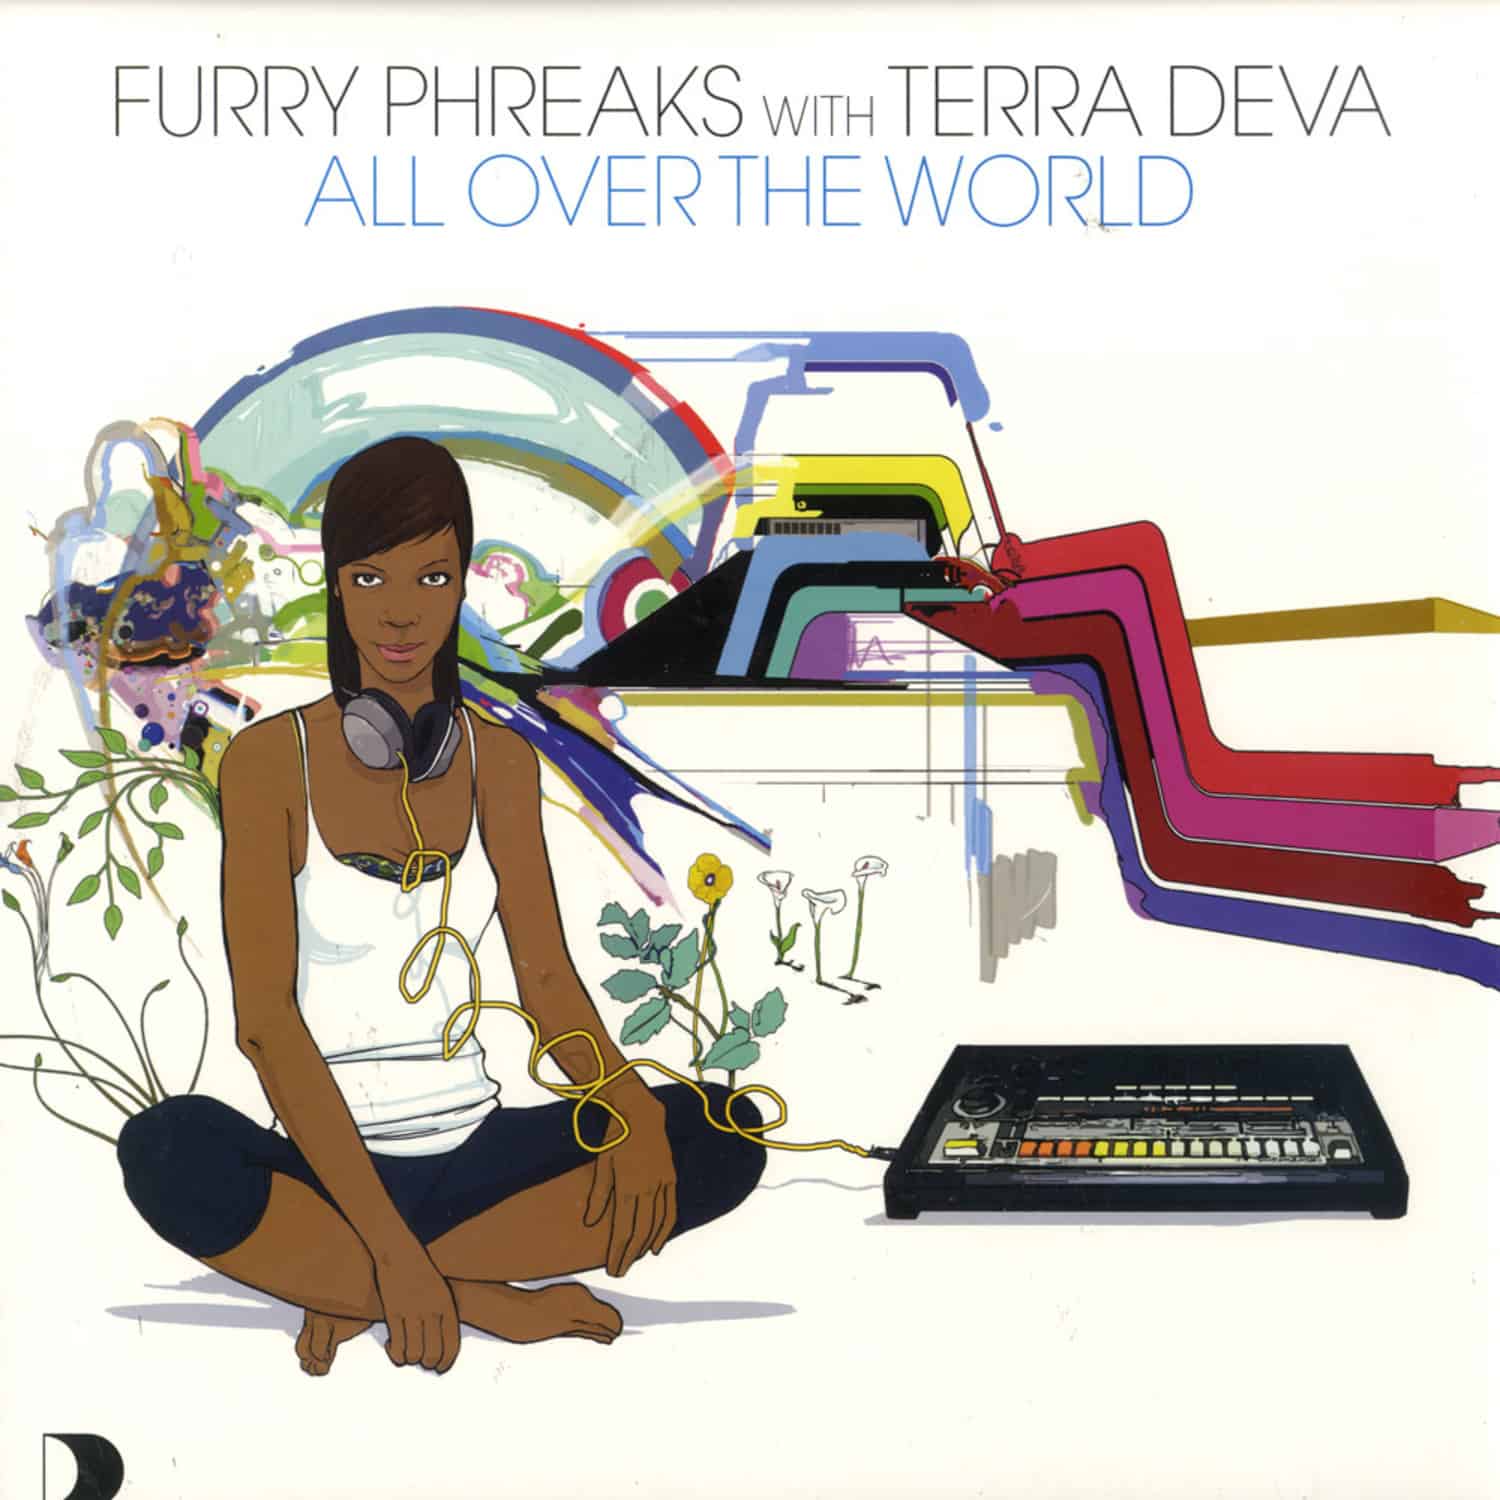 Furry Phreaks with Terra Deva - ALL OVER THE WORLD